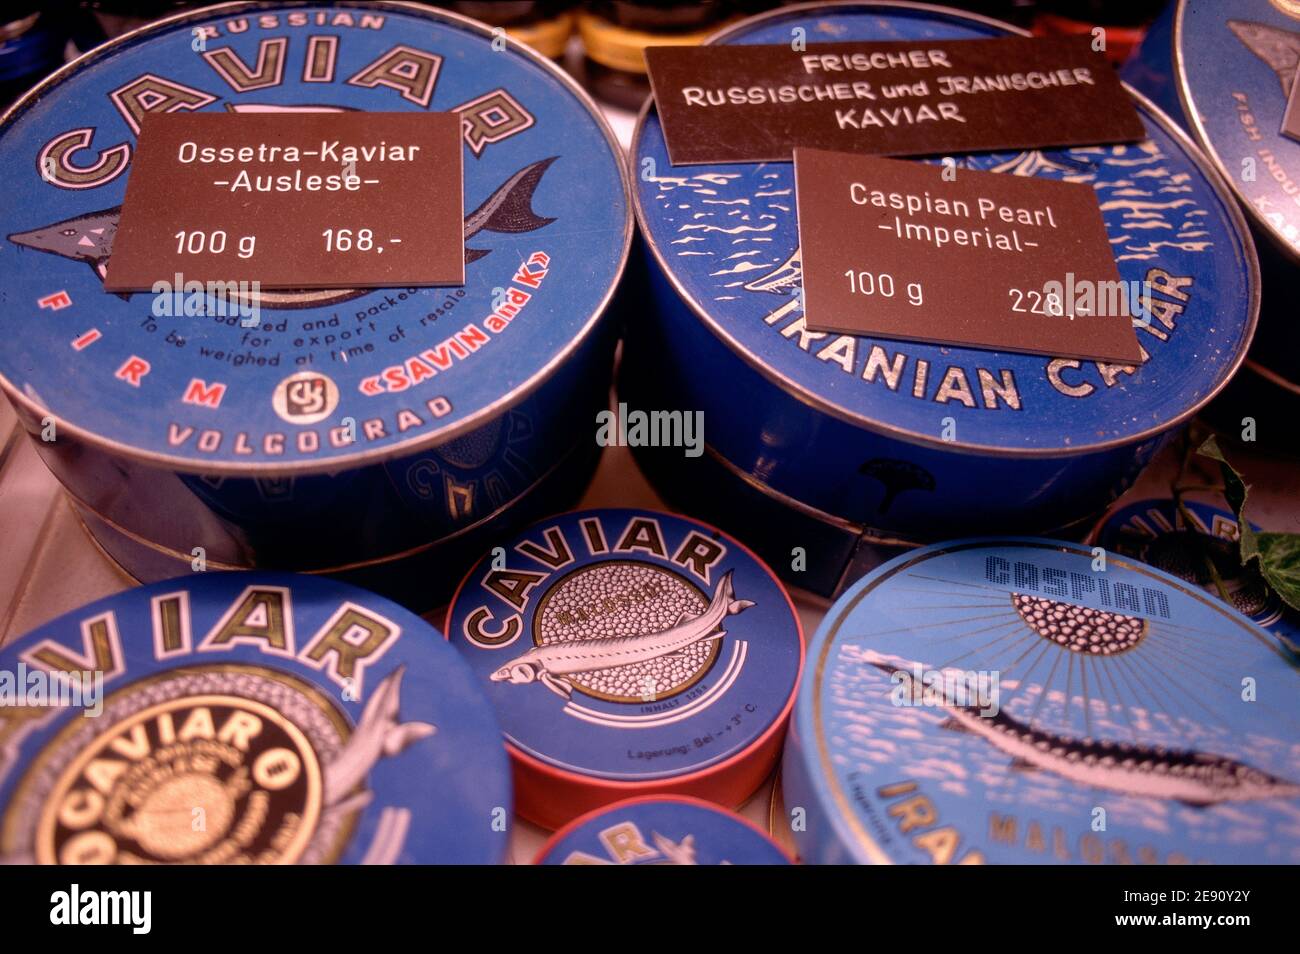 Caspian caviar immagini e fotografie stock ad alta risoluzione - Alamy